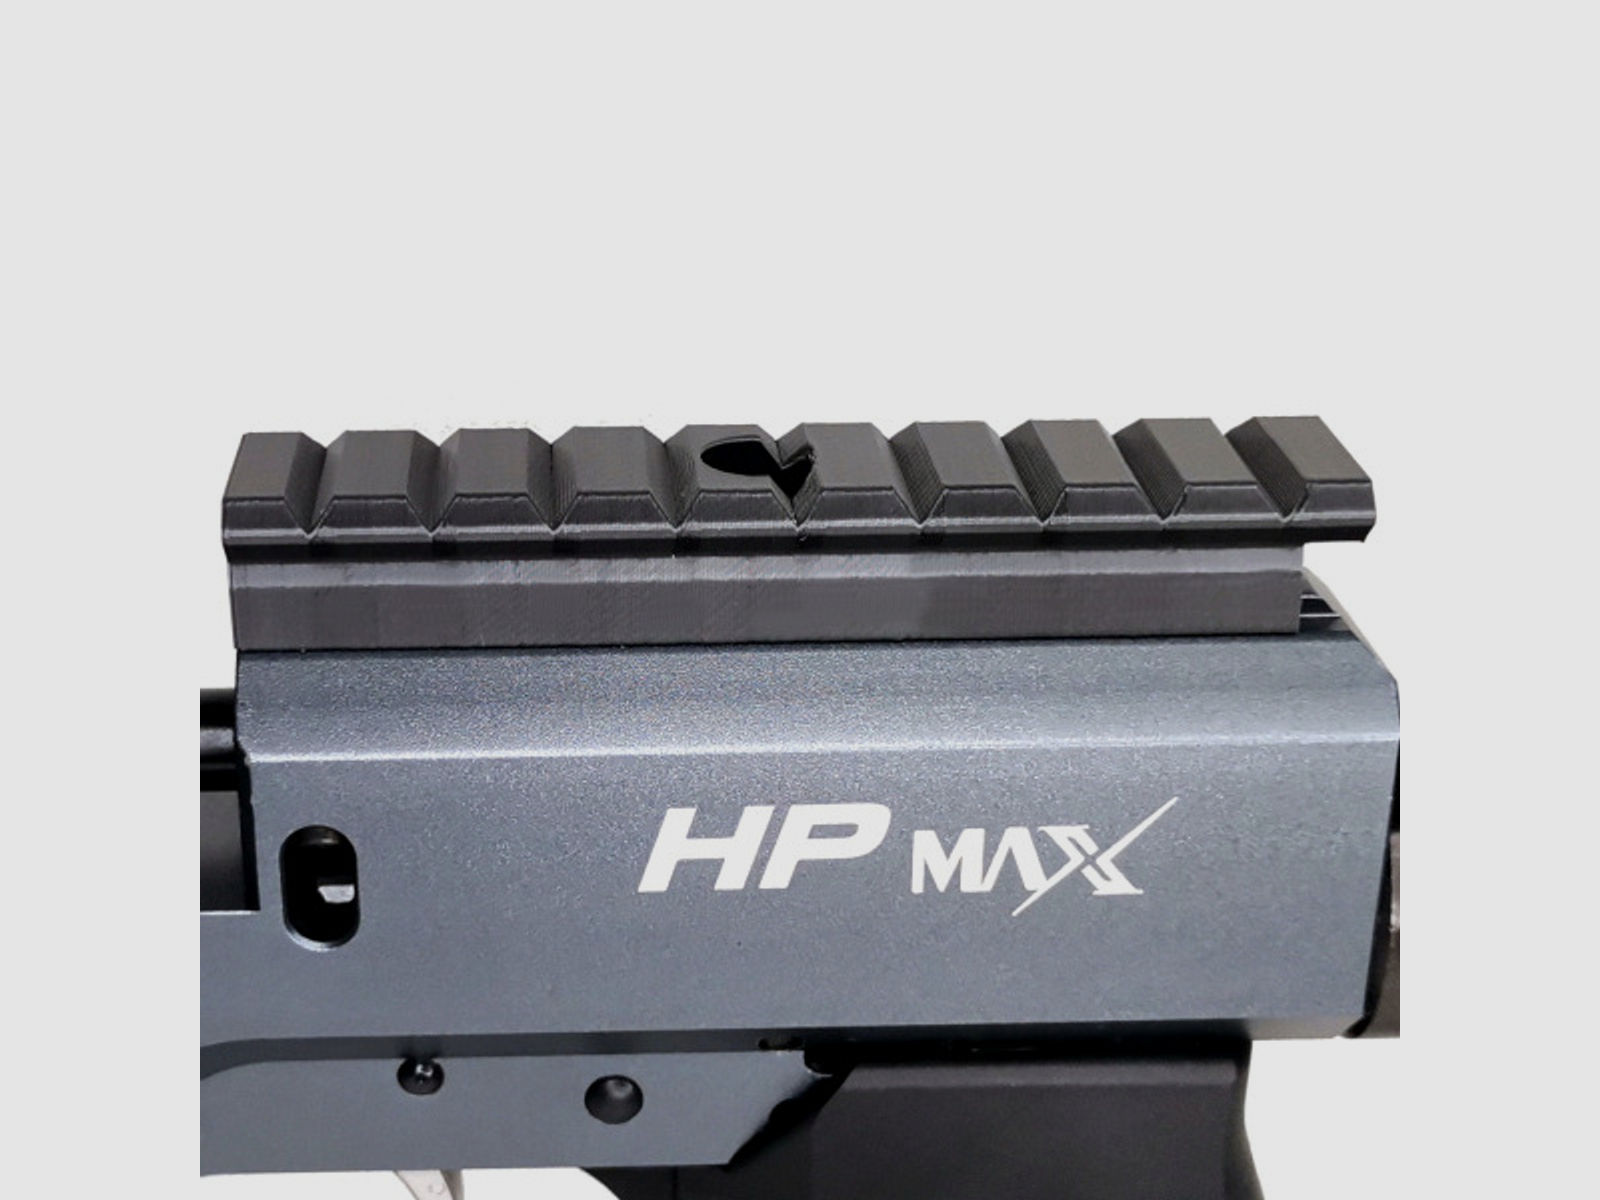 Picatinny Weaver Schiene Prismenschiene AEA HP Max HPMax Picatini Pikatini W021